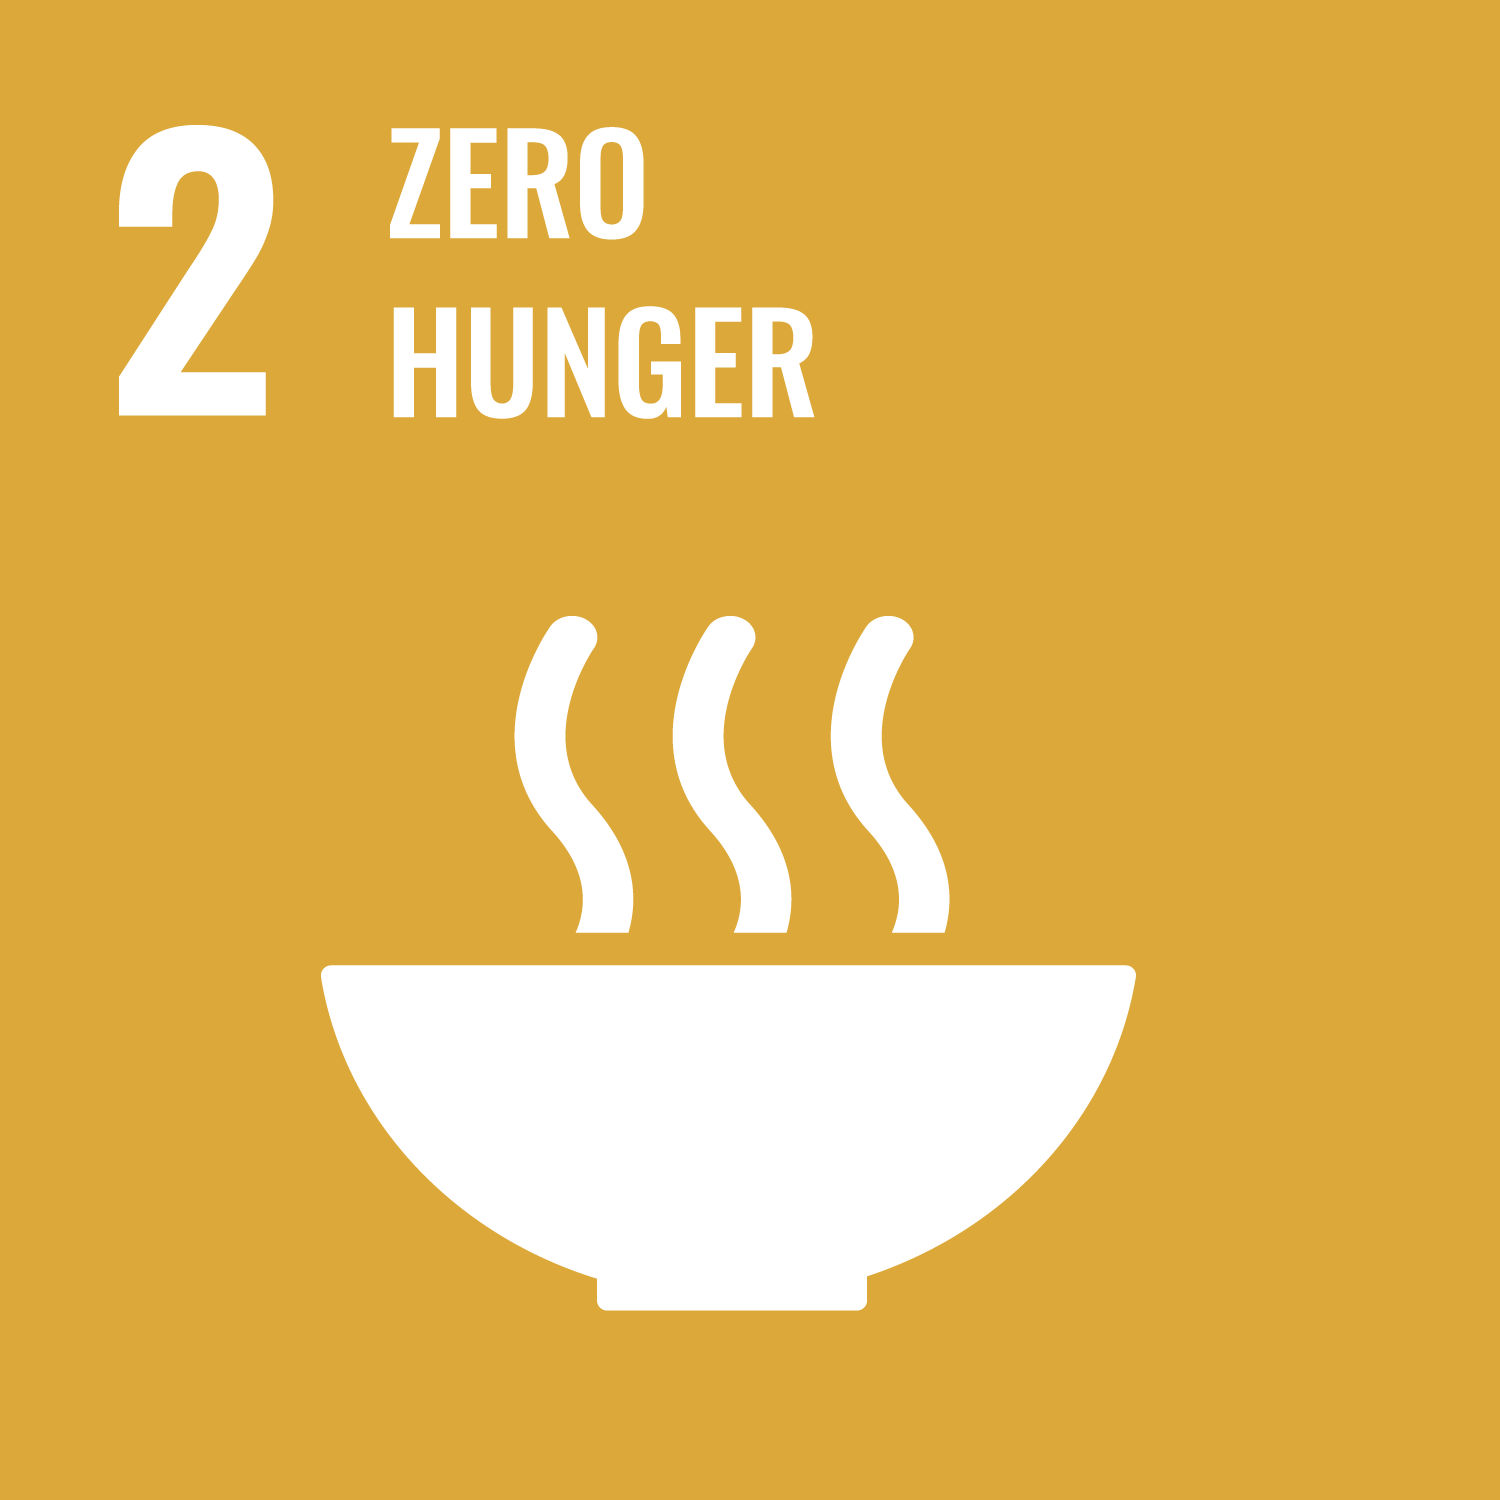 Zero hunger.